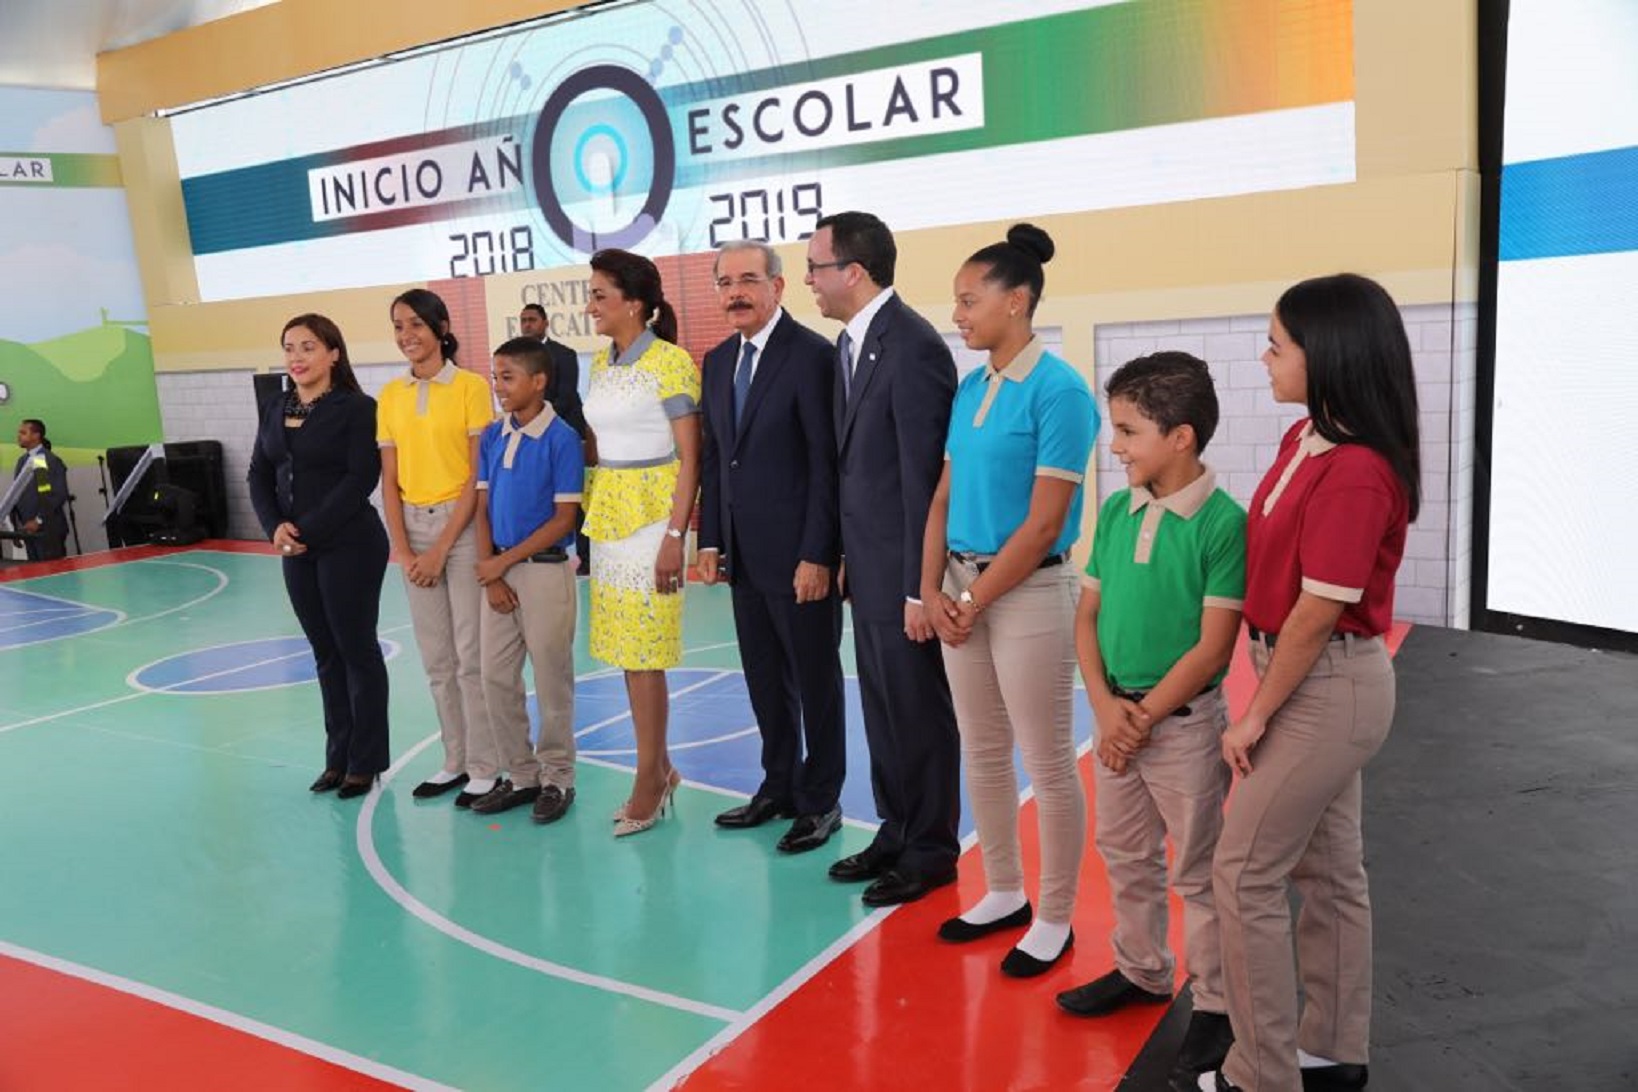 REPÚBLICA DOMINICANA: Más de 2 millones 800 mil estudiantes van a clases. Danilo Medina encabeza inicio año escolar 2018-2019 en Hato Mayor